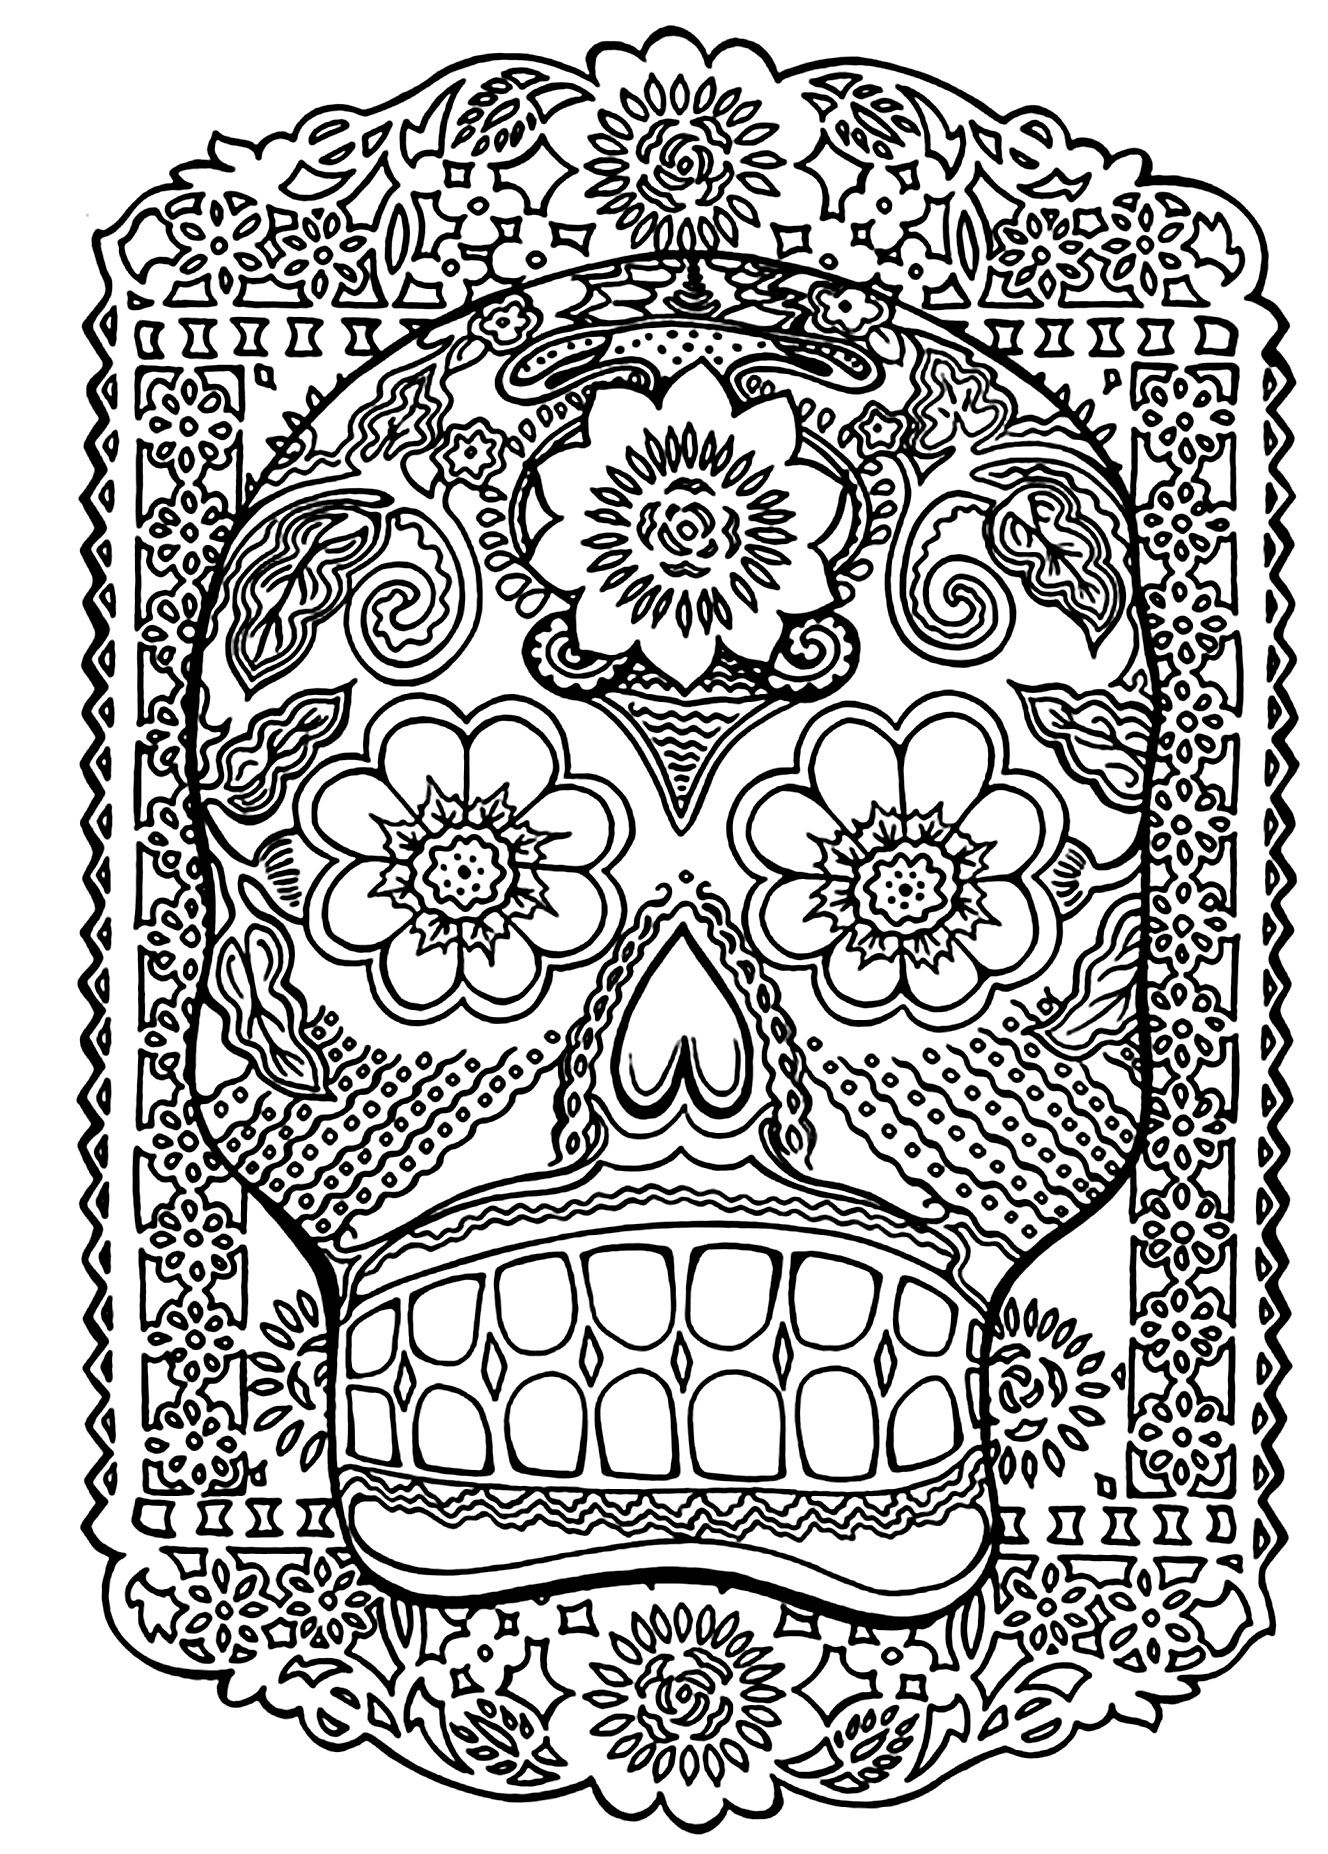 Disegni da colorare per adulti : El Dia De Los Muertos - 12